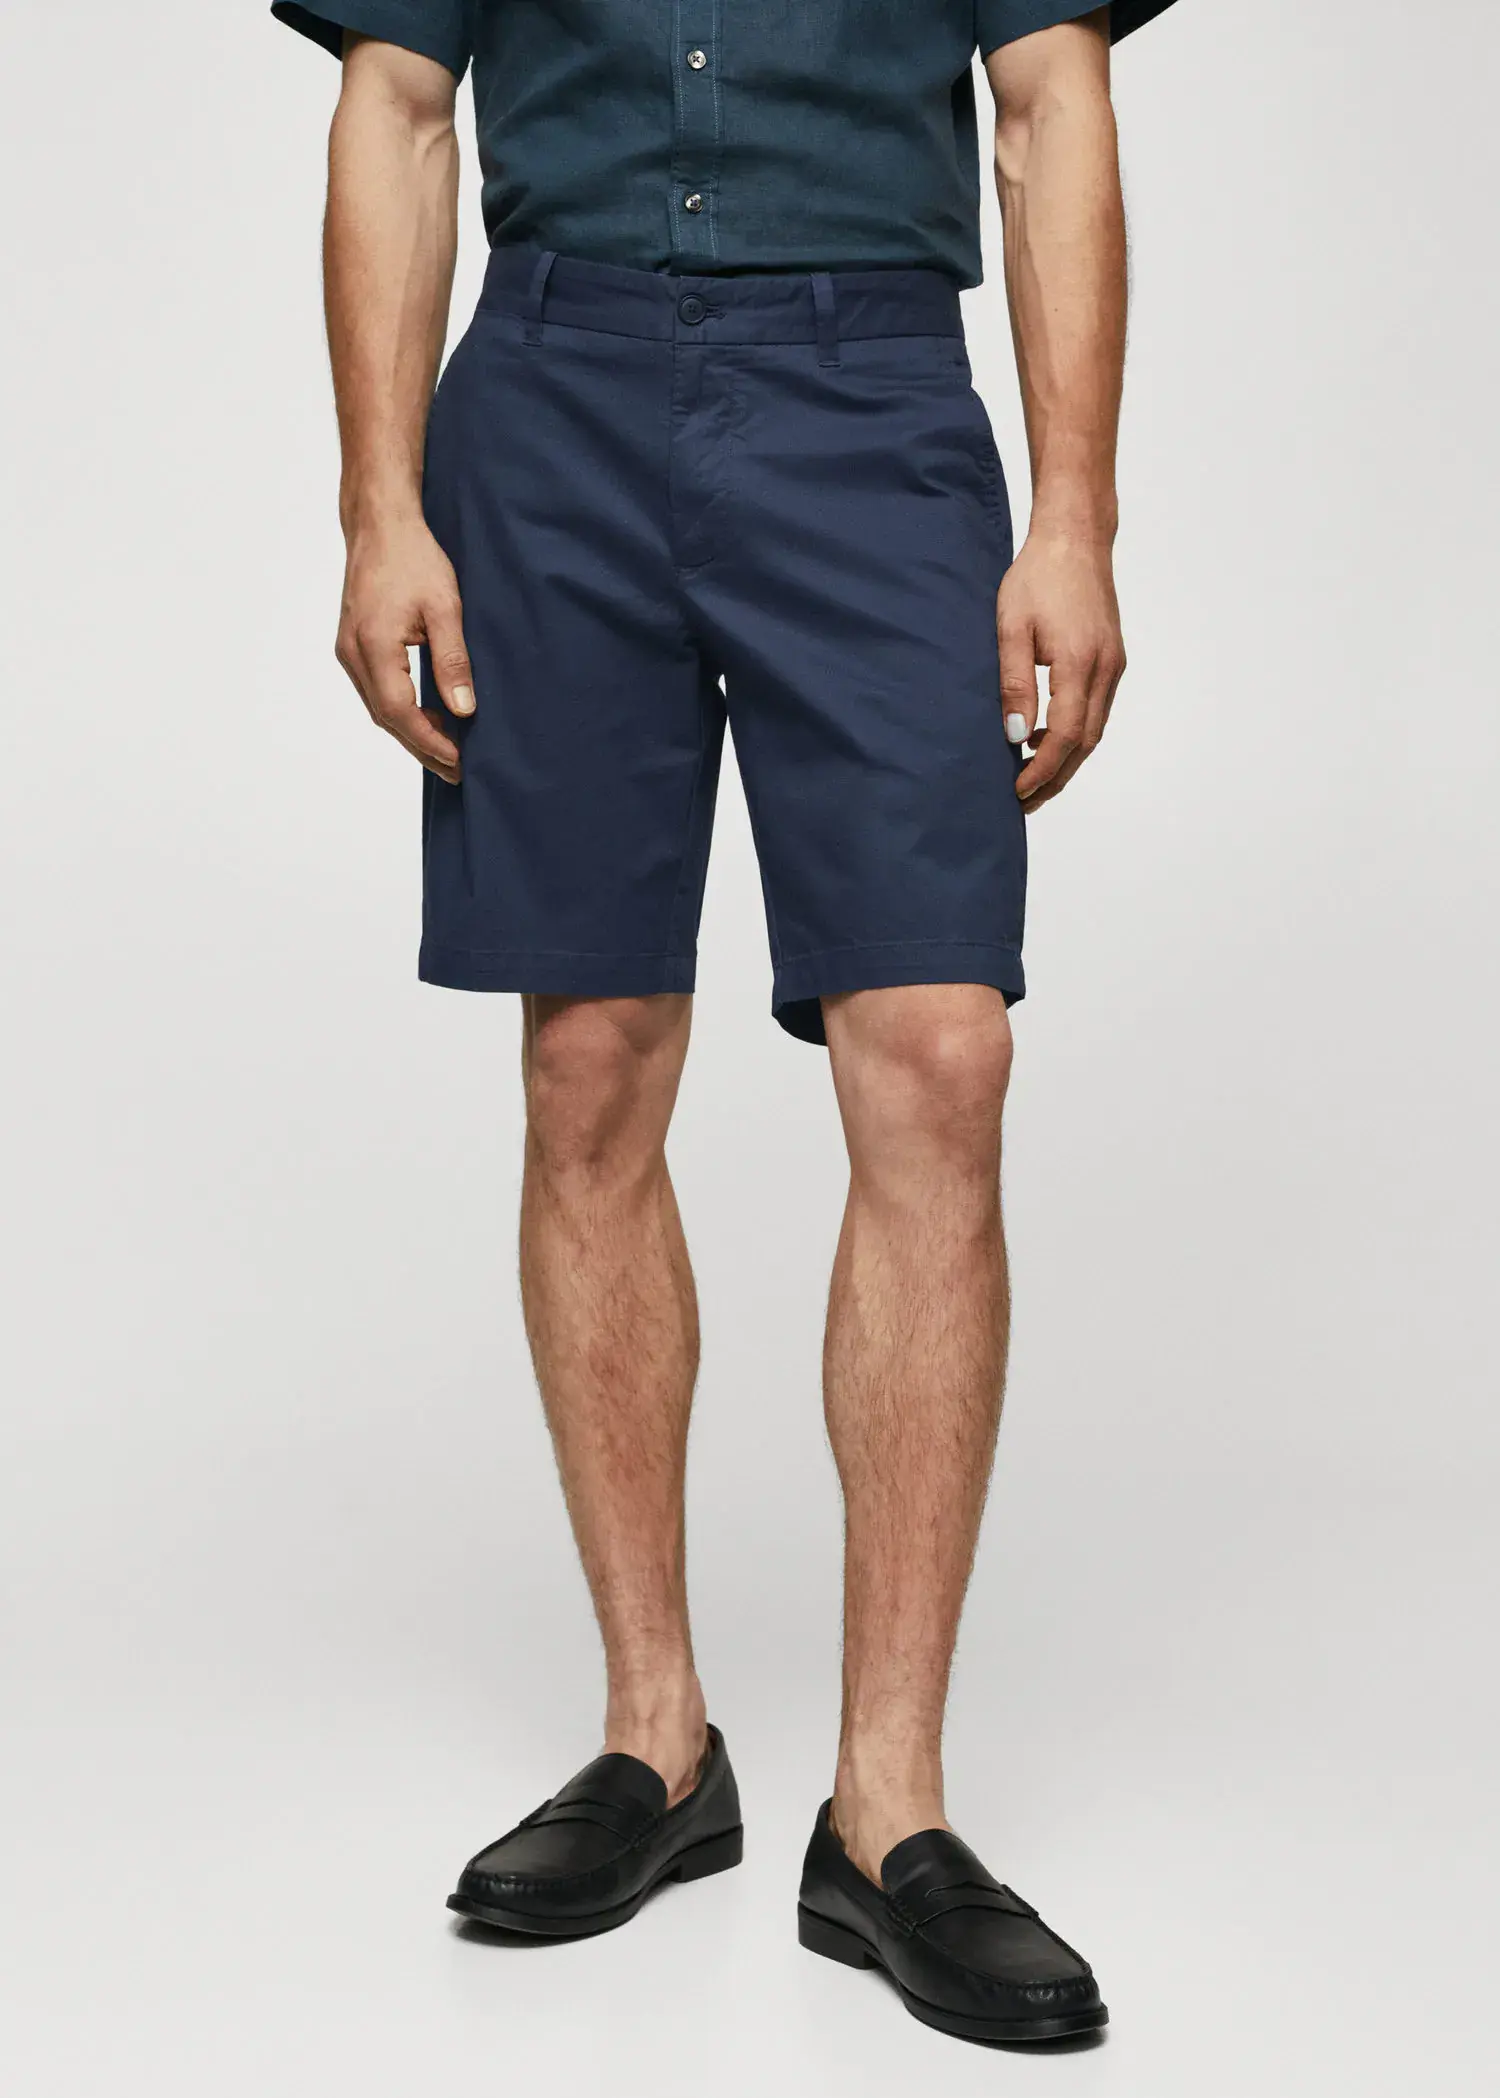 Mango Chino Bermuda shorts. a man wearing a pair of navy blue shorts. 